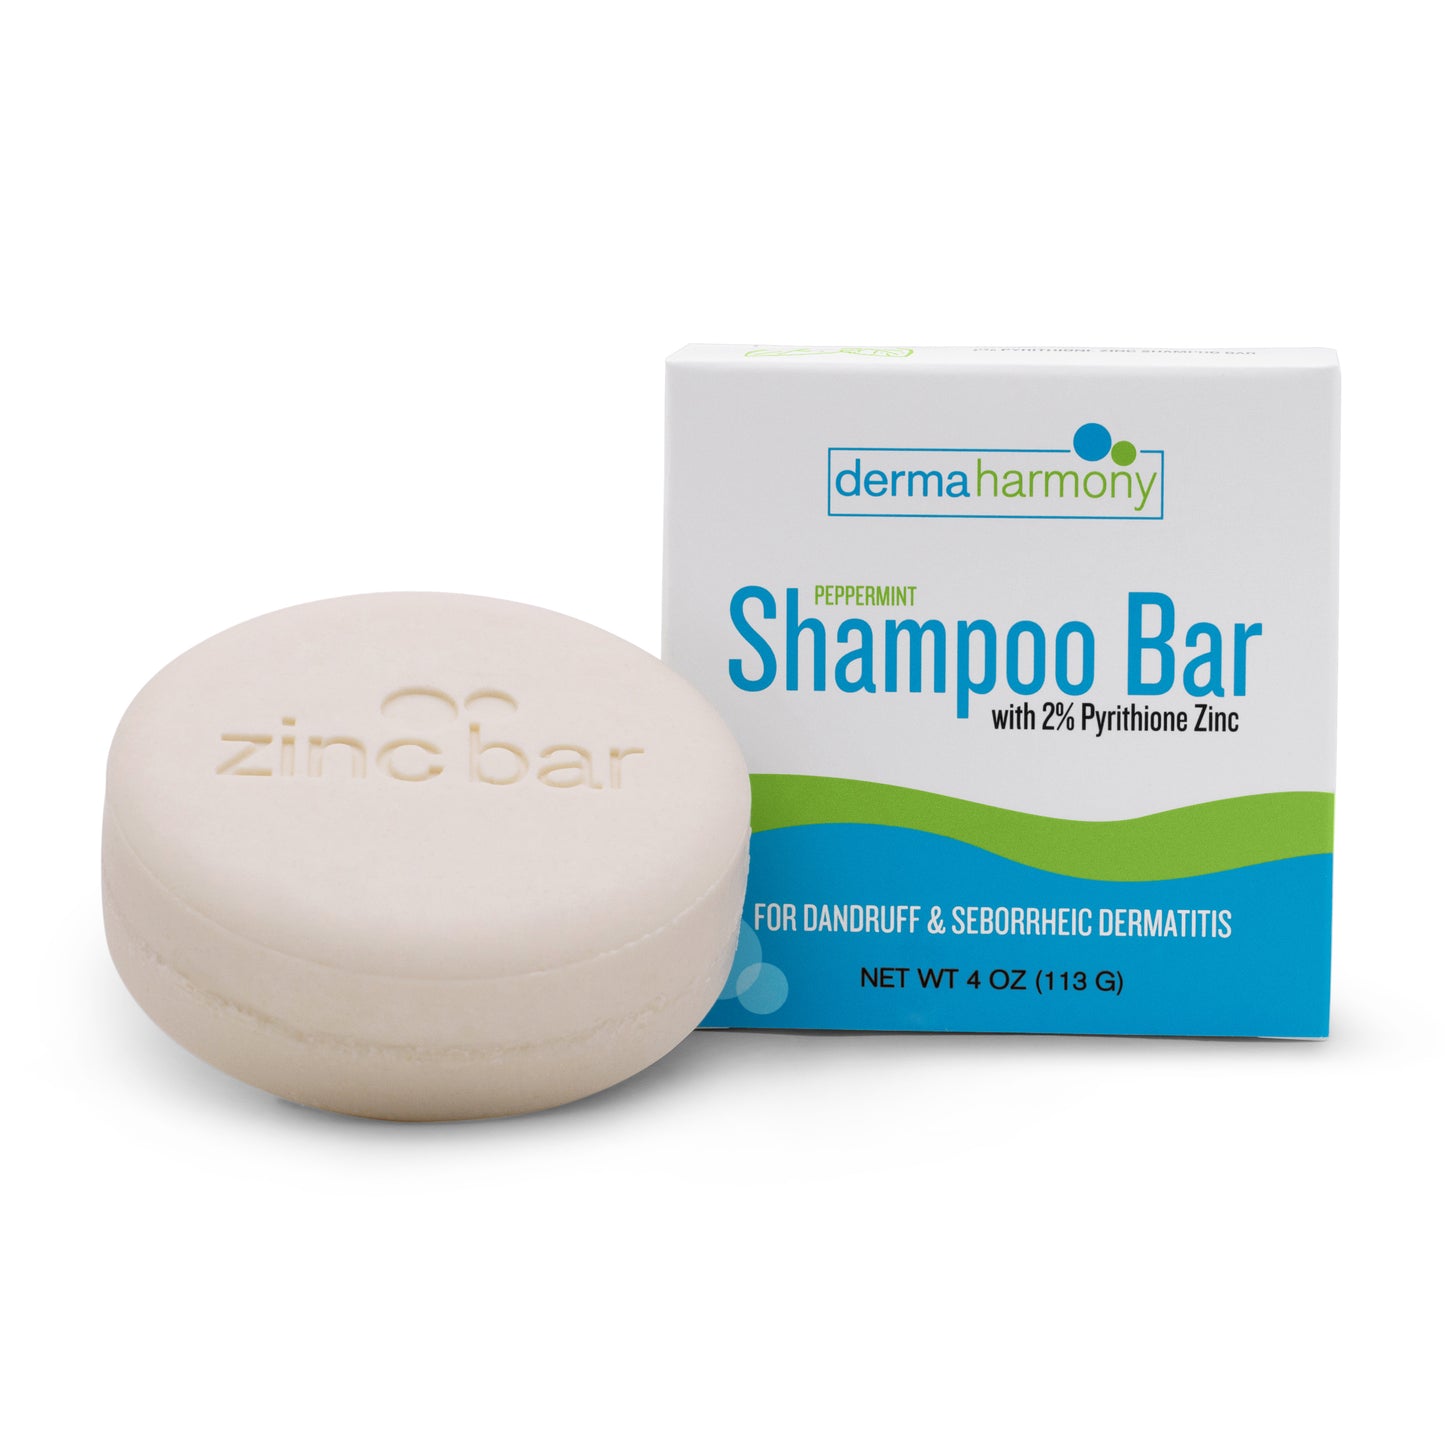 2% Pyrithione Zinc Dandruff & Seborrheic Dermatitis Shampoo Bar - Peppermint